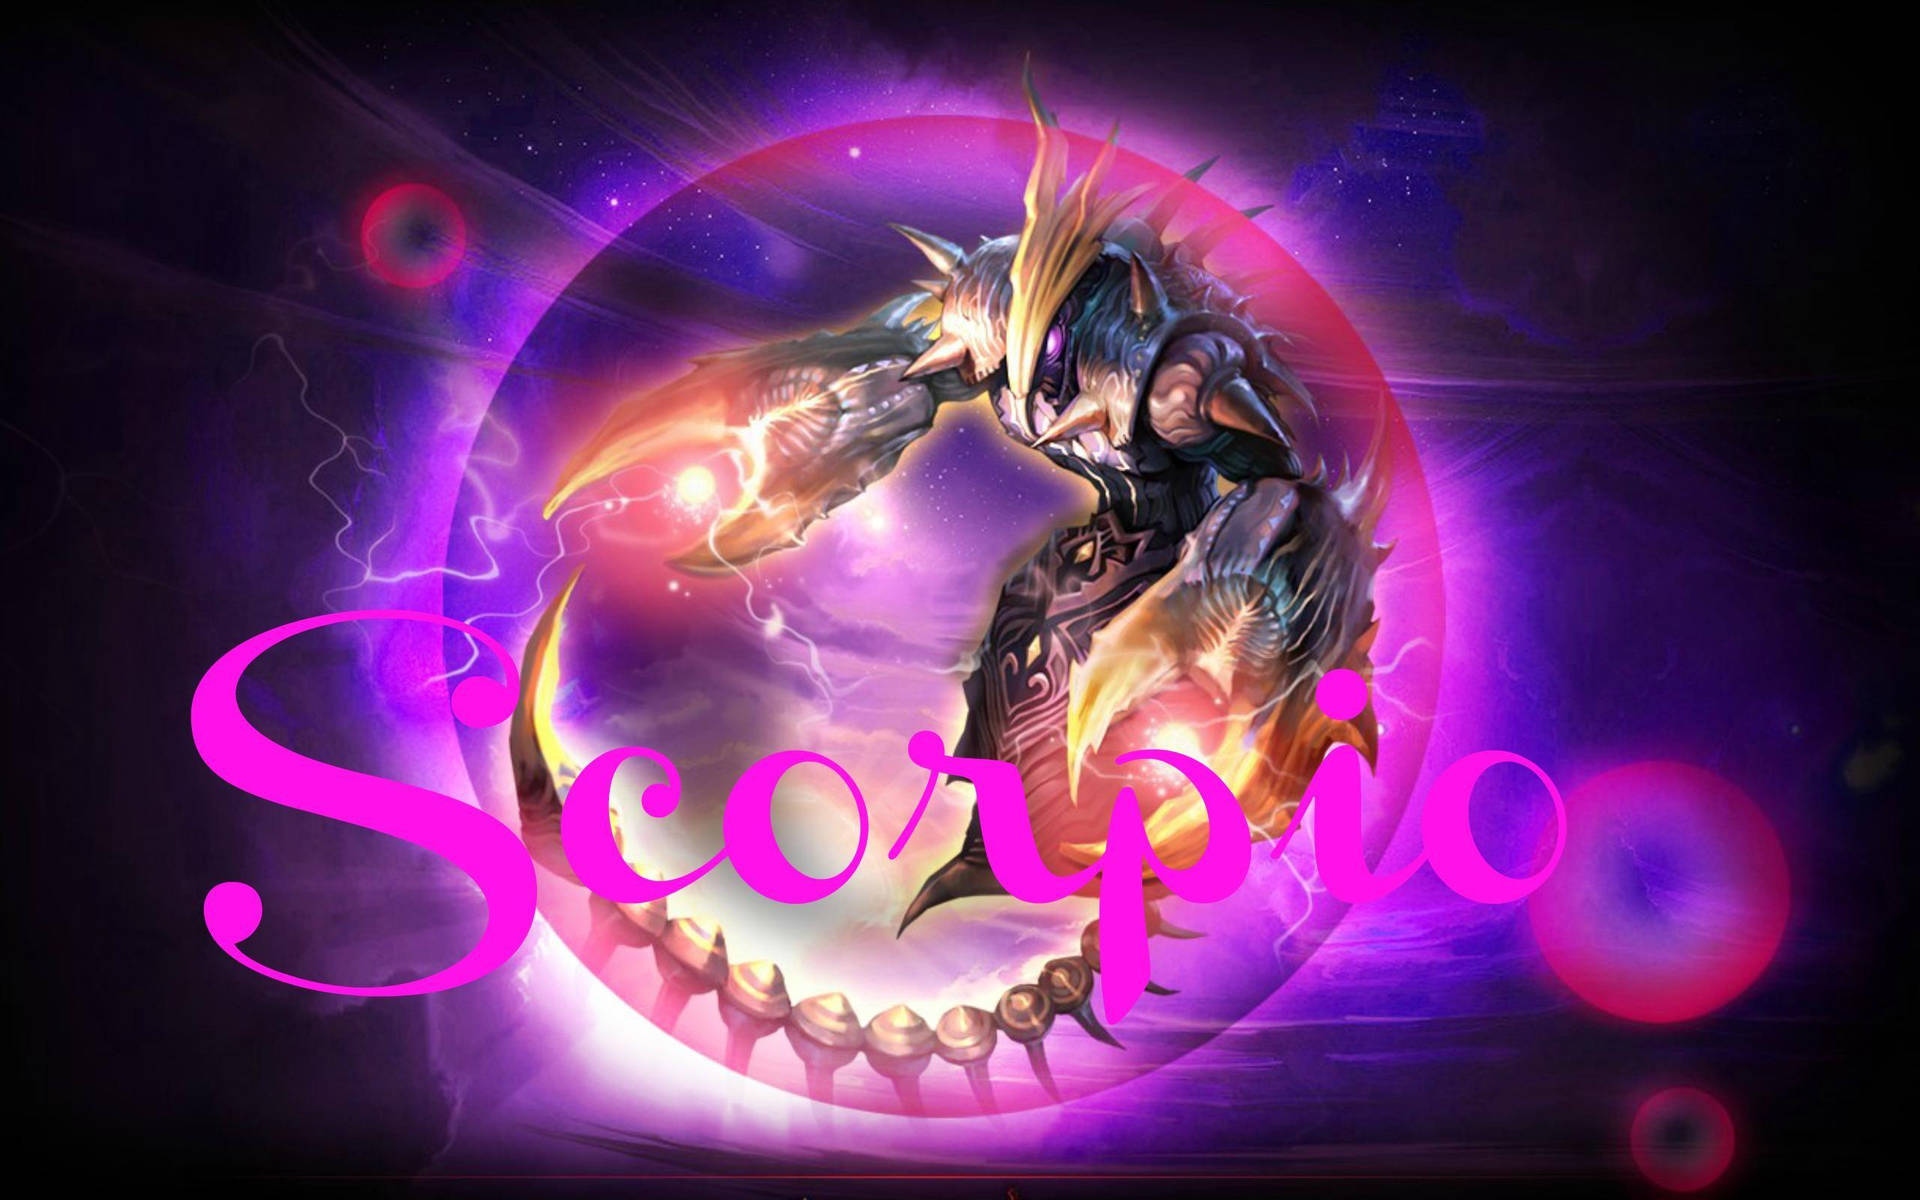 Scorpio Video Game Character